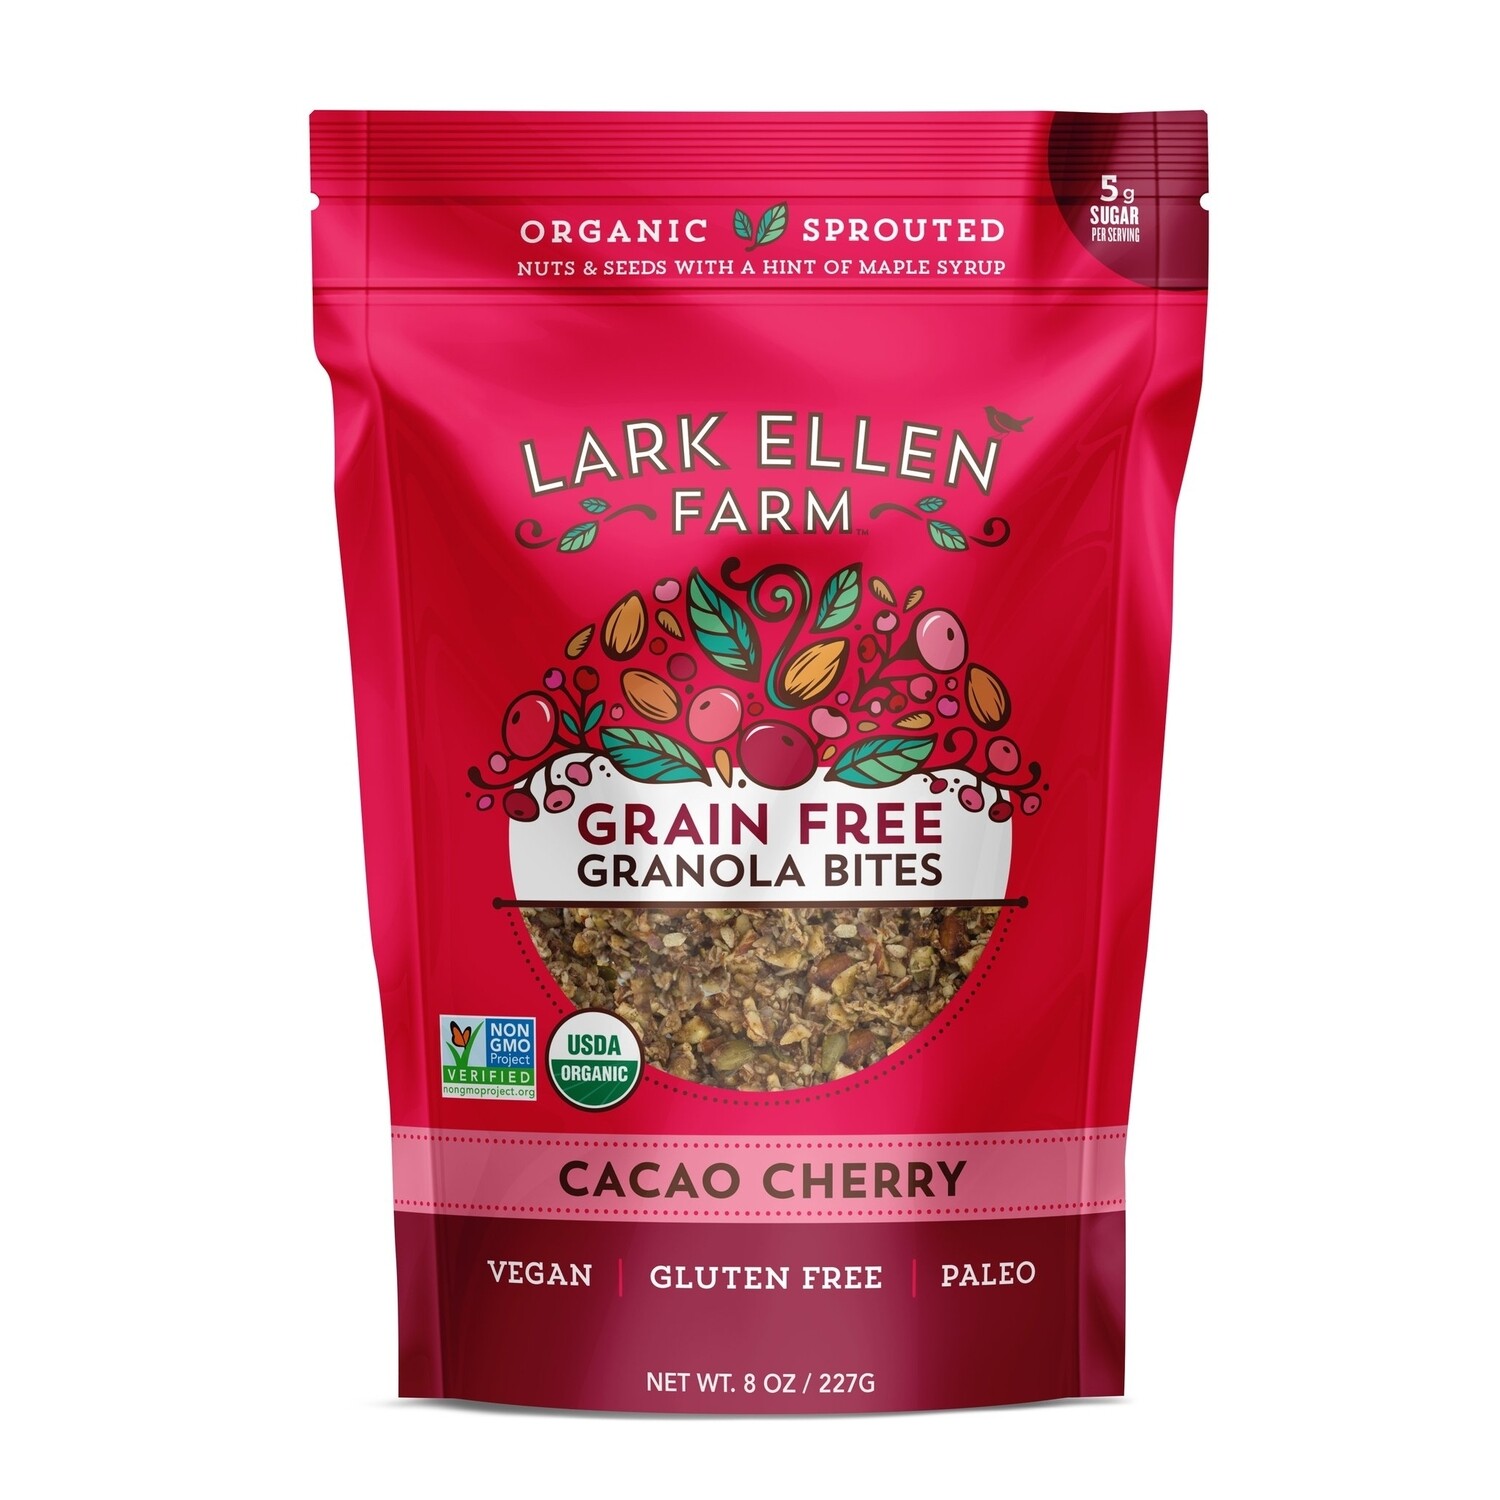 Cacao Cherry Granola Bites